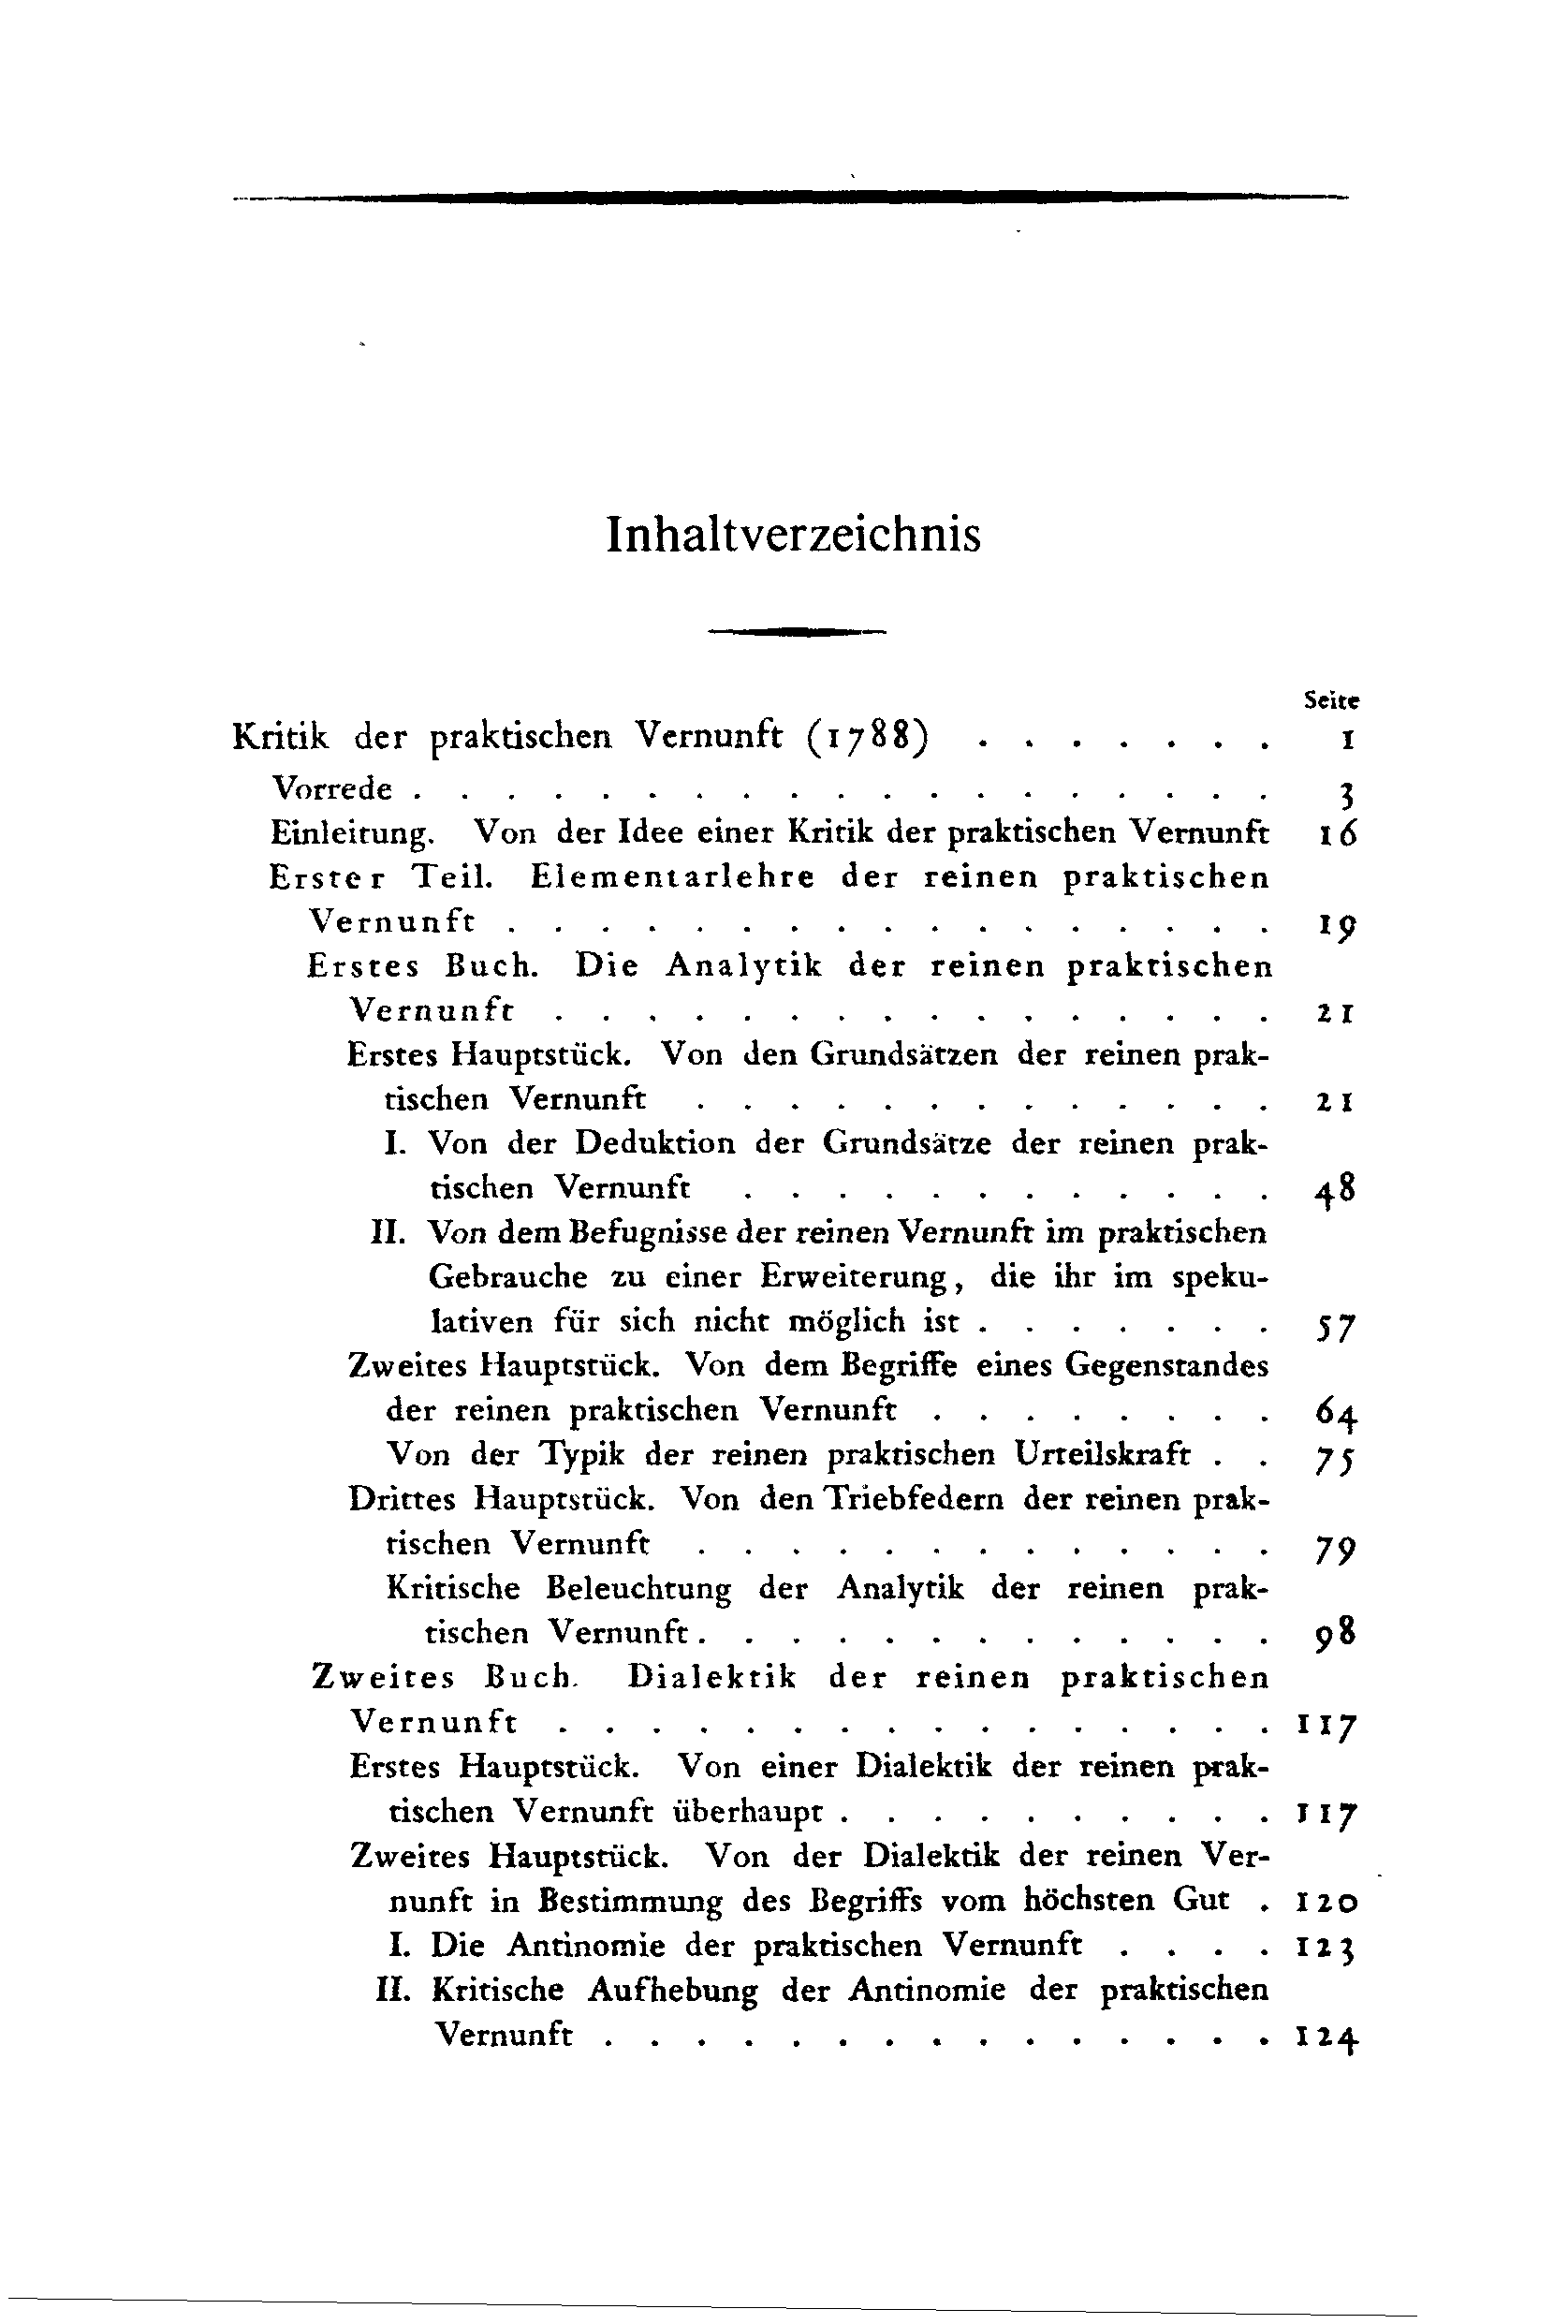 Inhaltverzeichnis Seite Kritik der praktischen Vernunft (1788) 1 Vorrede 3 Einleitung. Von der Idee einer Kritik der praktischen Vernunft 1<5 Erster Teil.